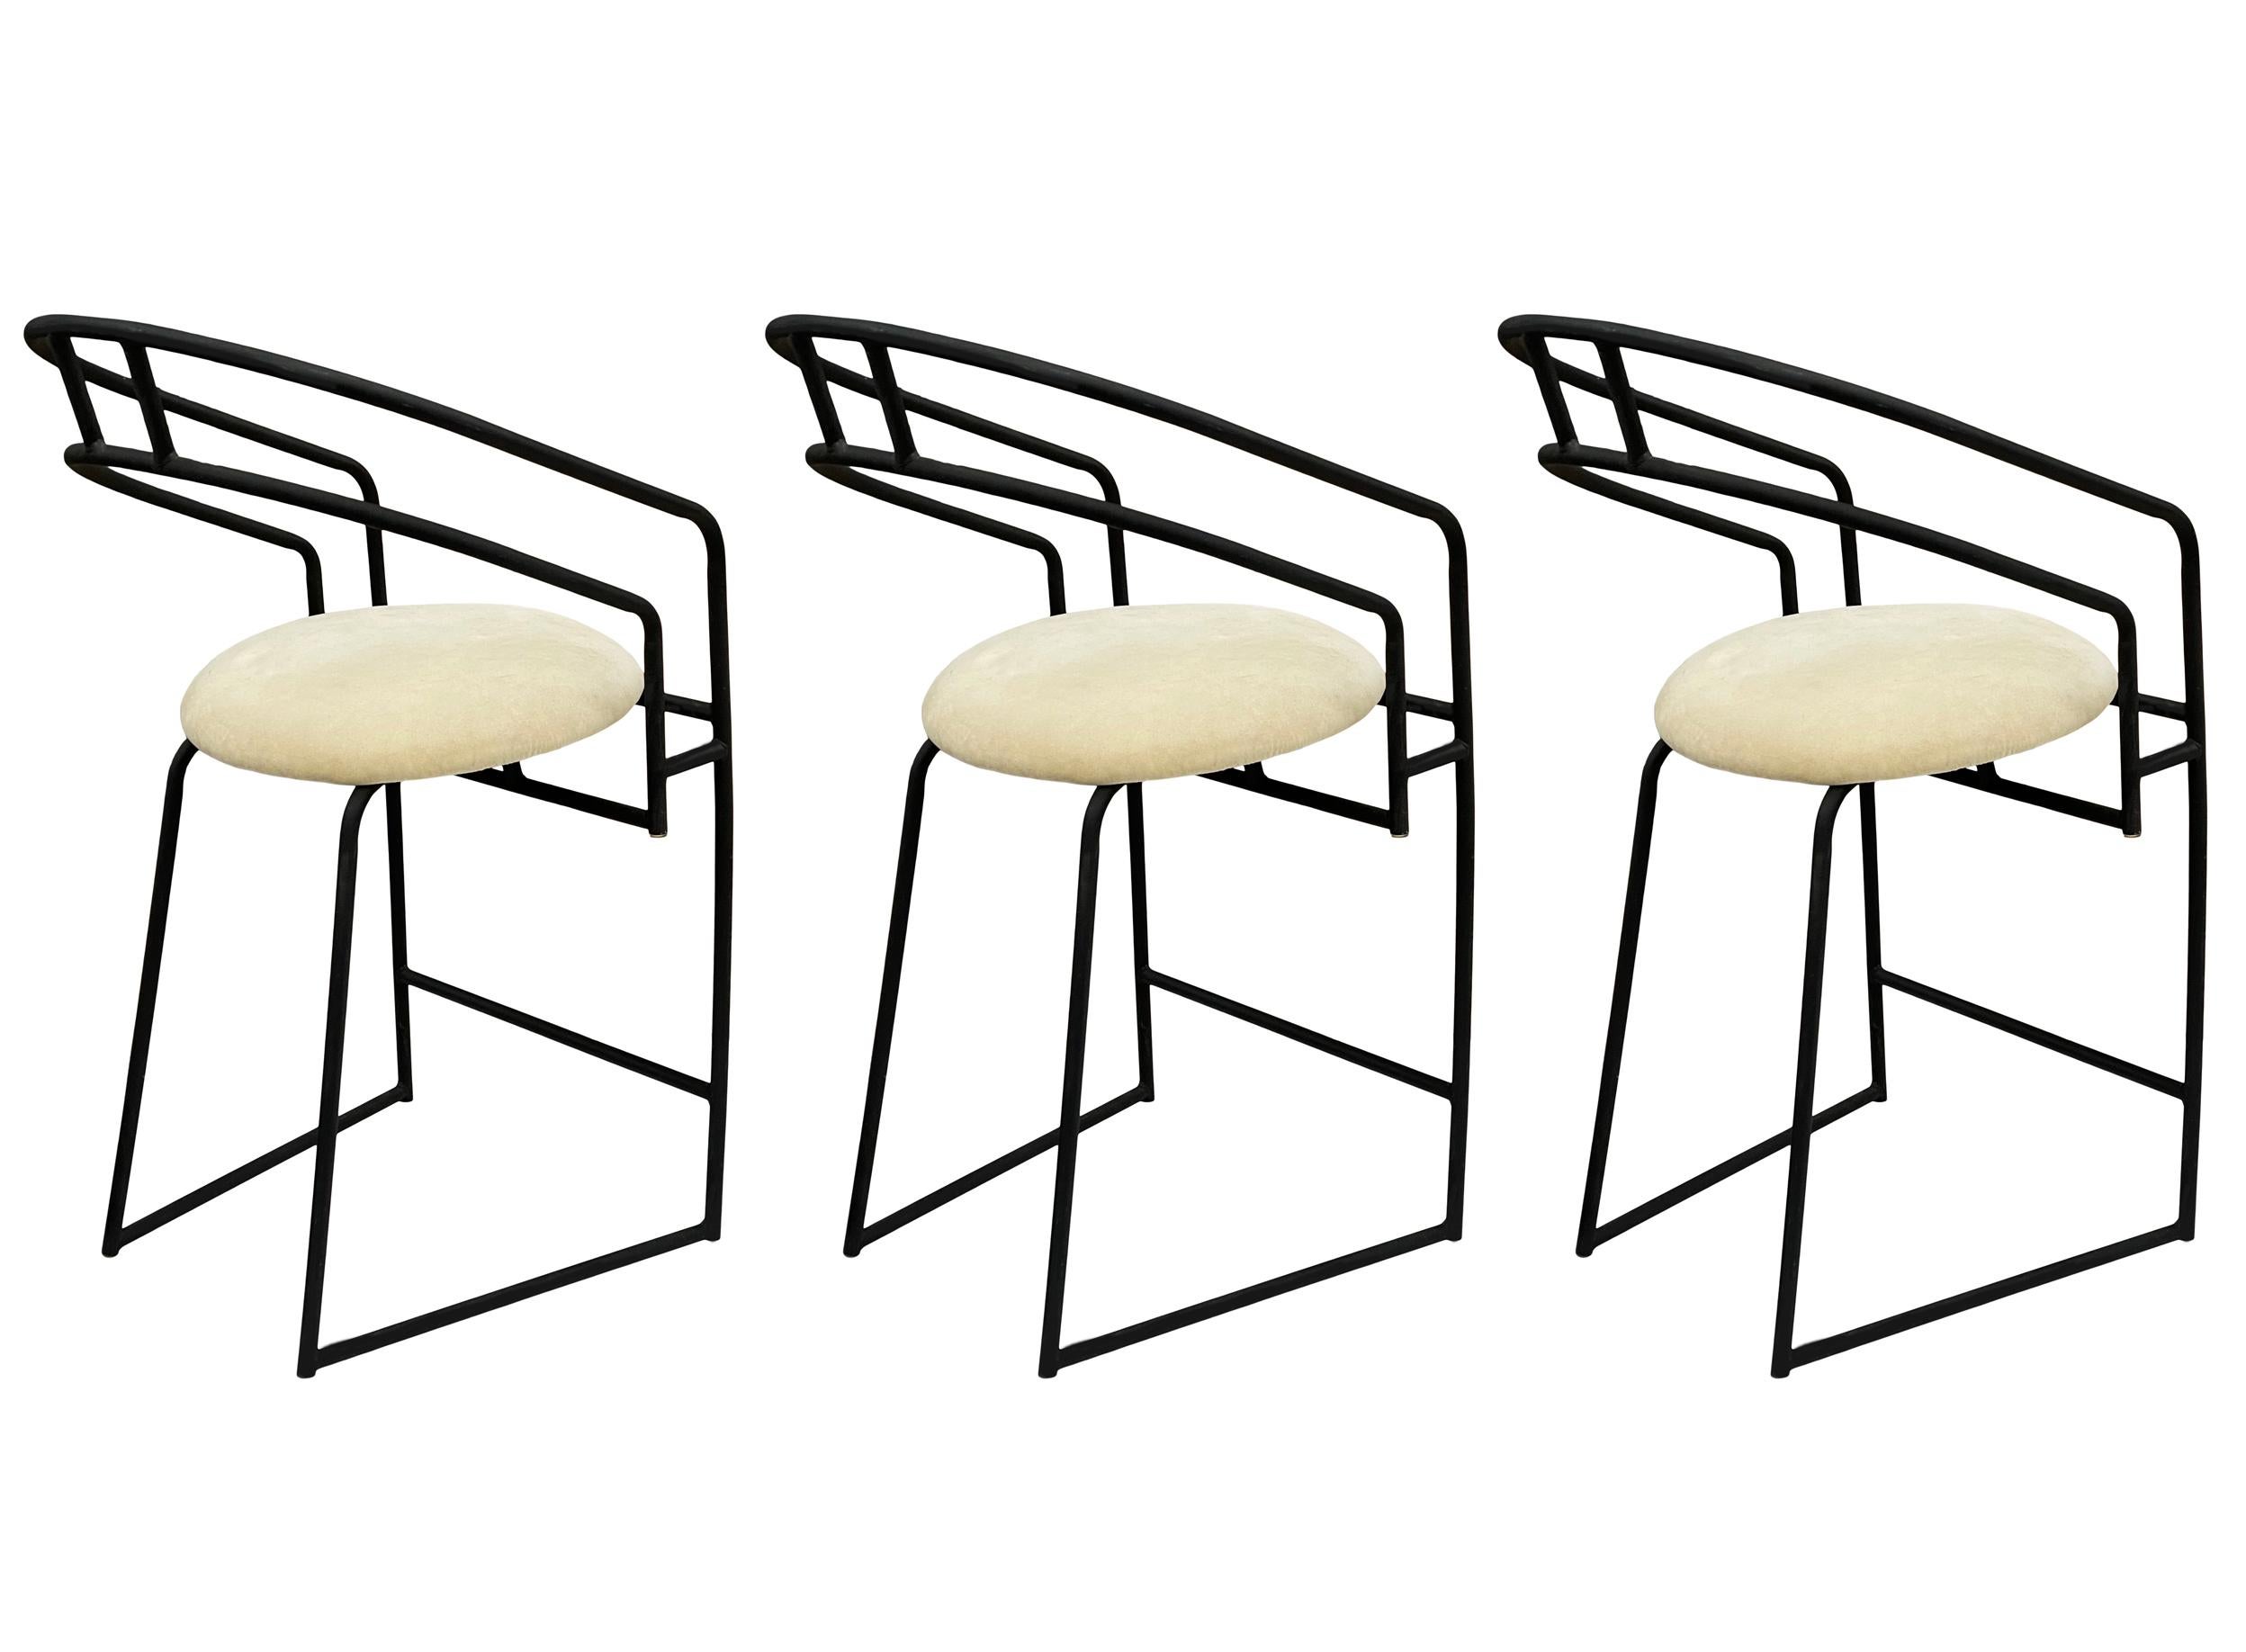 Un bellissimo set di tre sgabelli da bar in stile Post-Modern prodotto da Cal-Style nei primi anni '90. Questi modelli sono caratterizzati da telai verniciati a polvere nera e cuscini di seduta bianchi. Il tessuto è sporco e si consiglia di